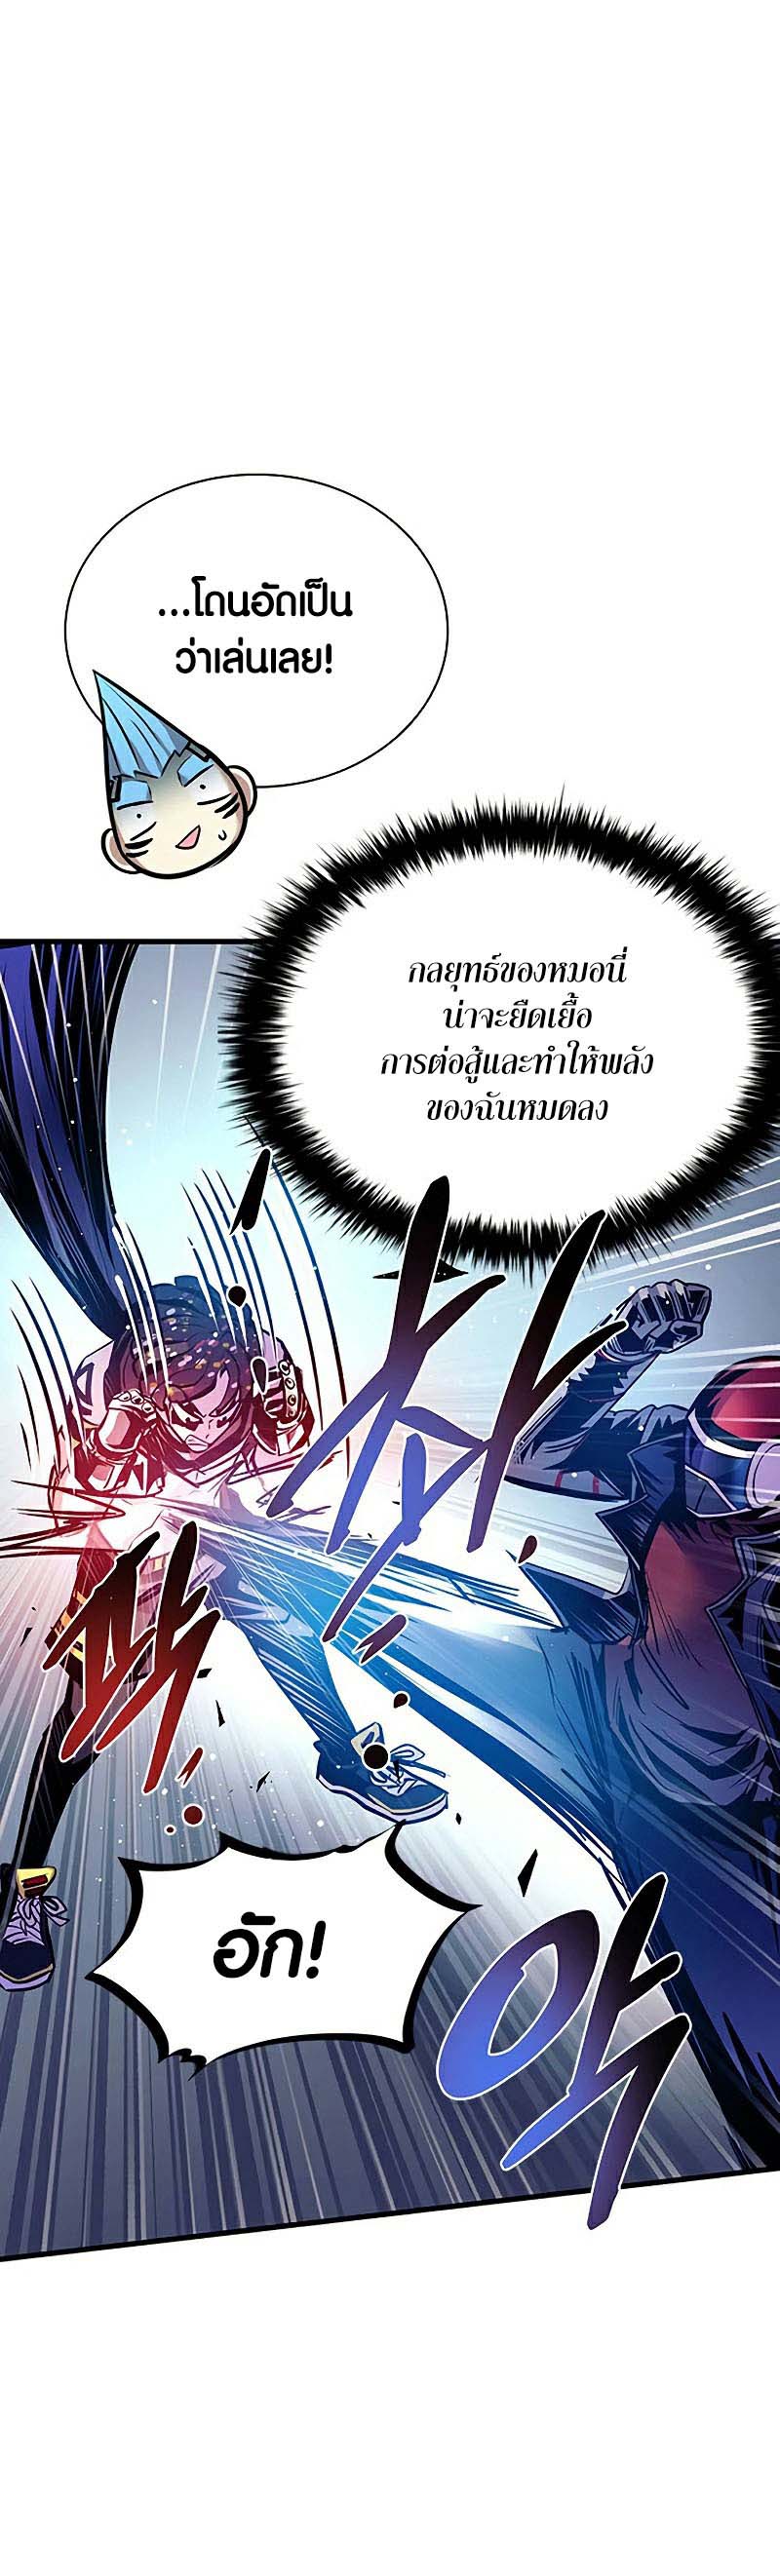 อ่าน เรื่อง Villain To Kill 127 spy manga 26